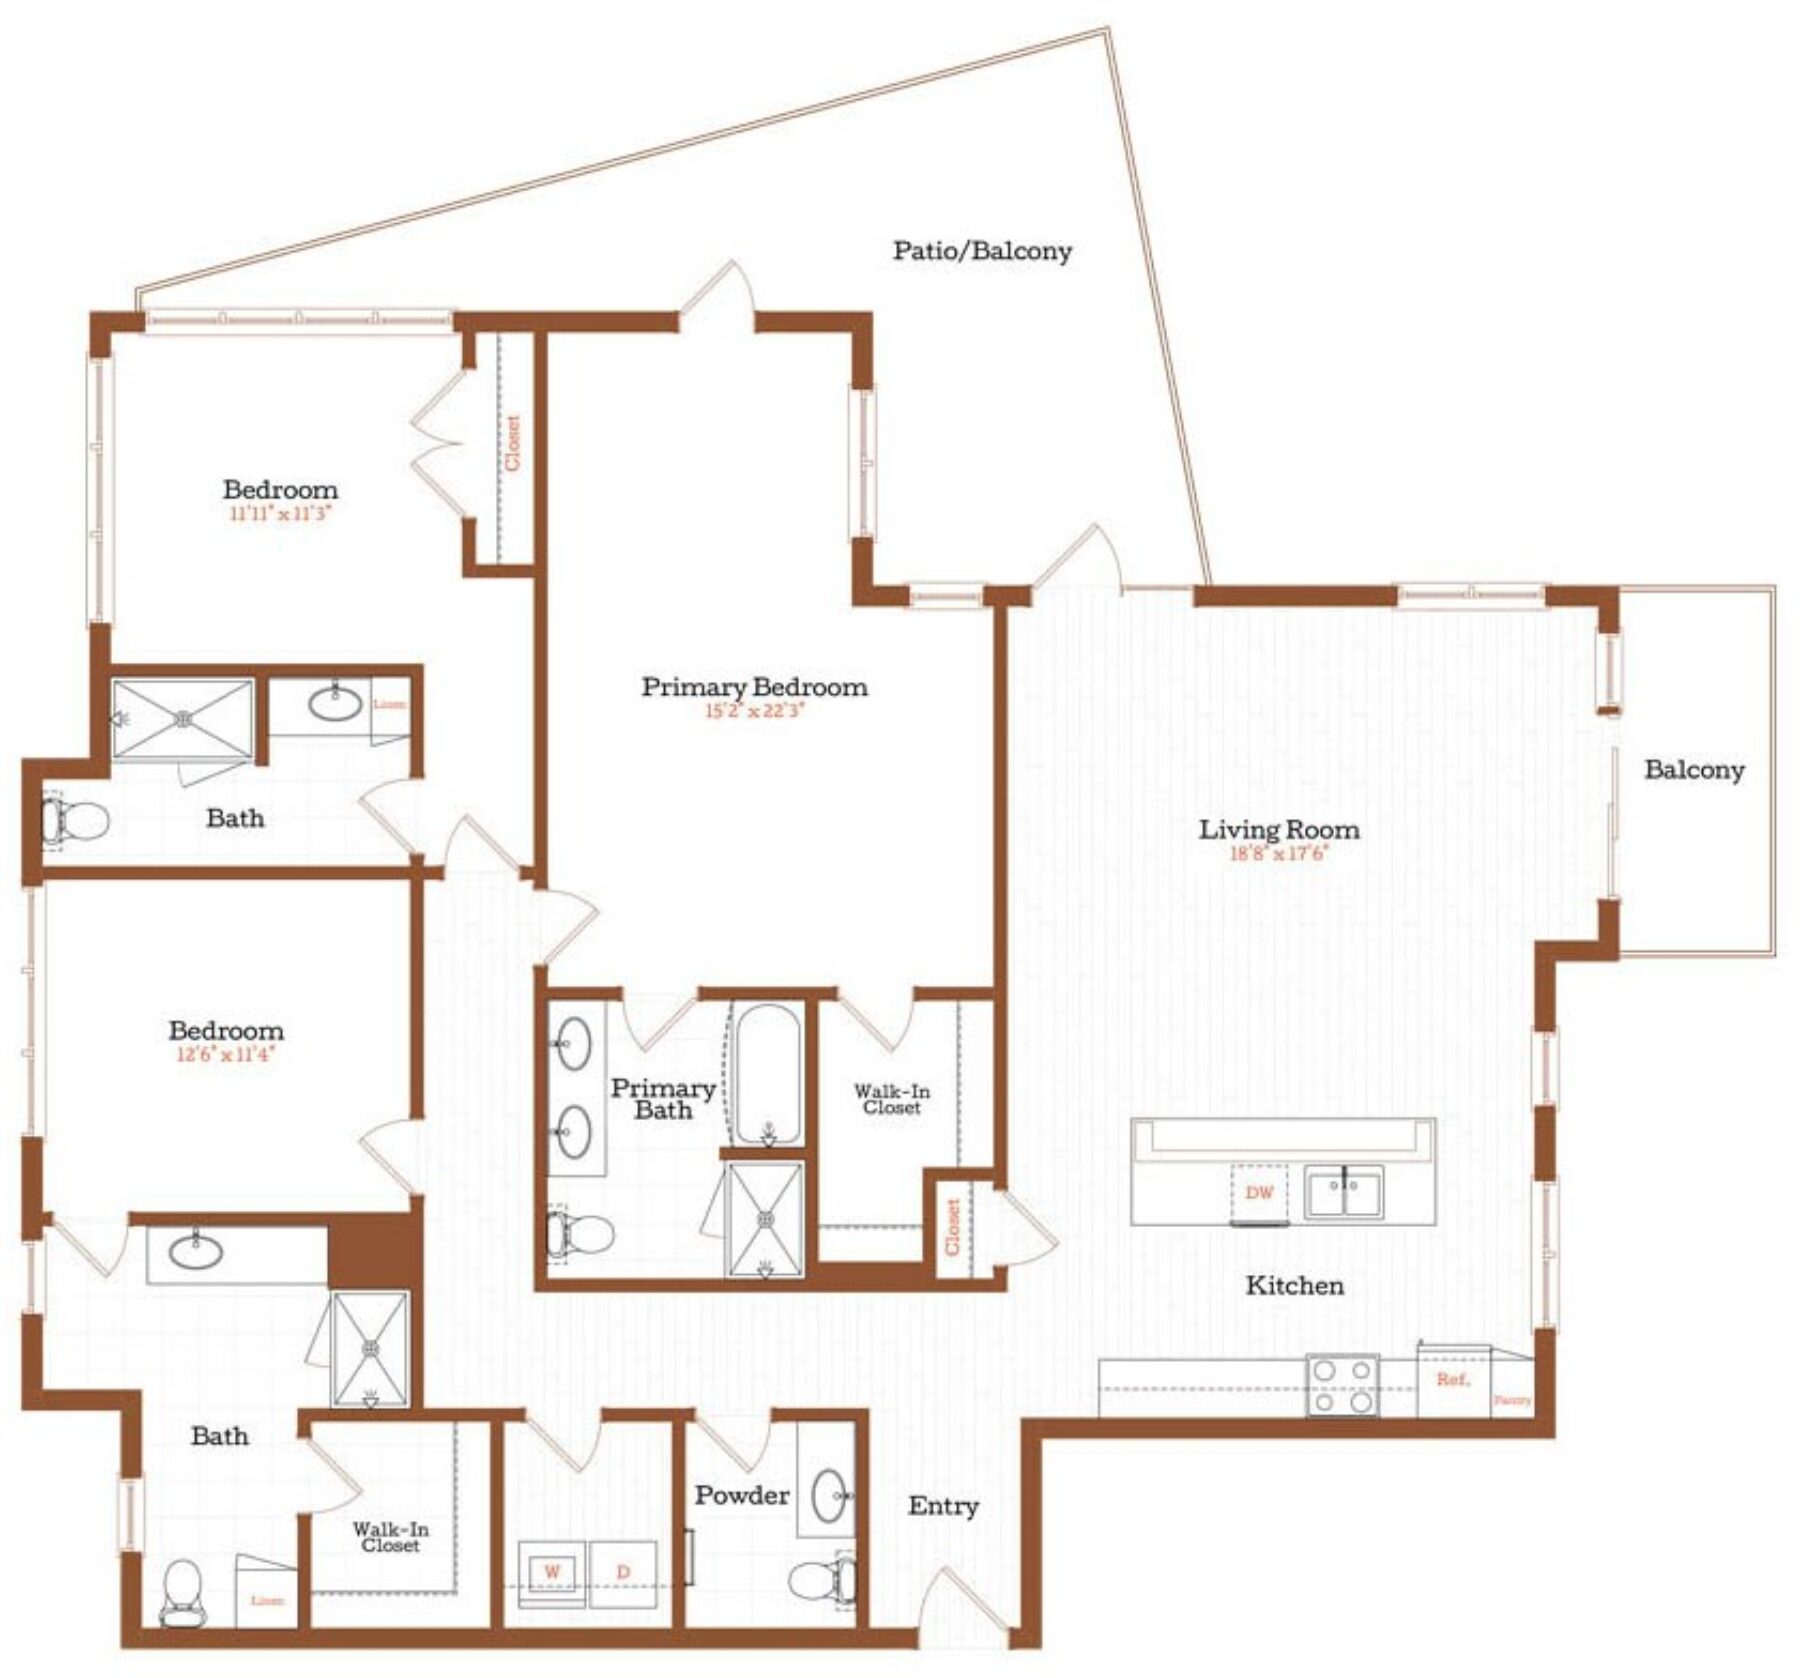 Plan Image: C2 - 3 Bedroom w/Terrace